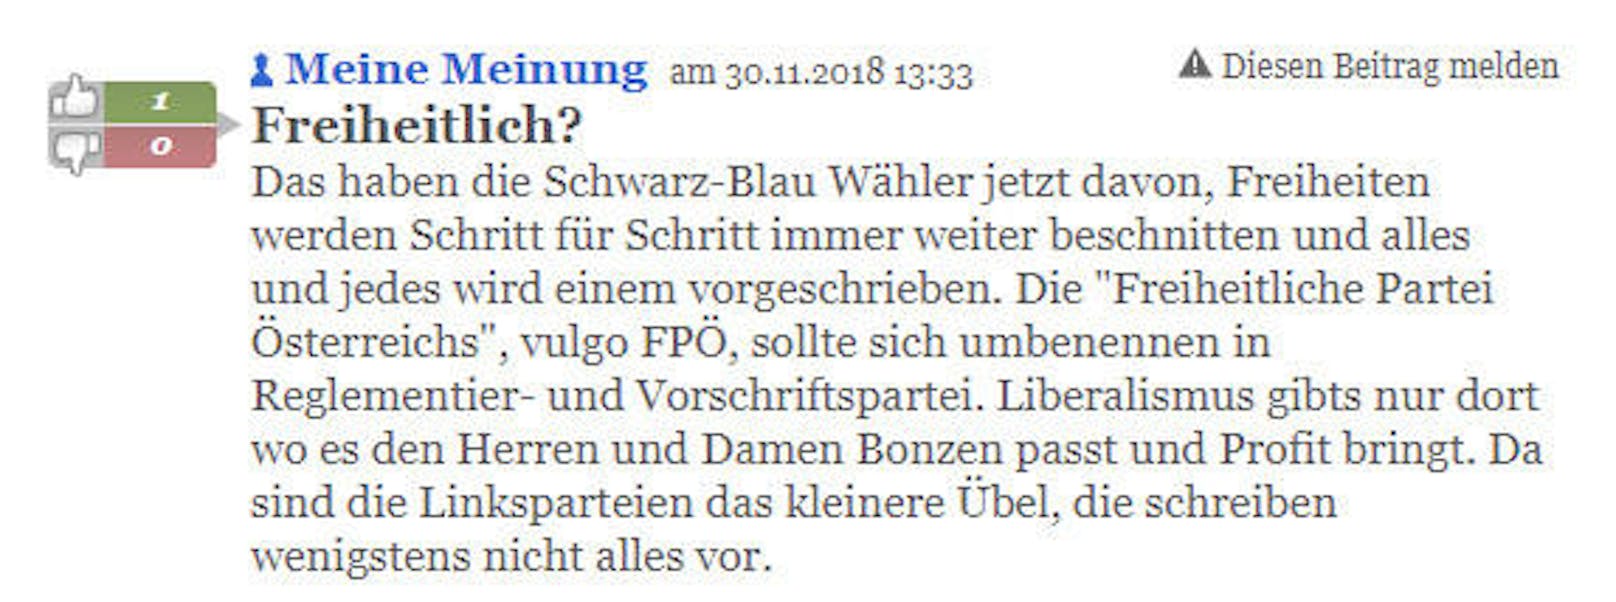 Dieser Leser findet, die FPÖ beschneide Freiheiten.